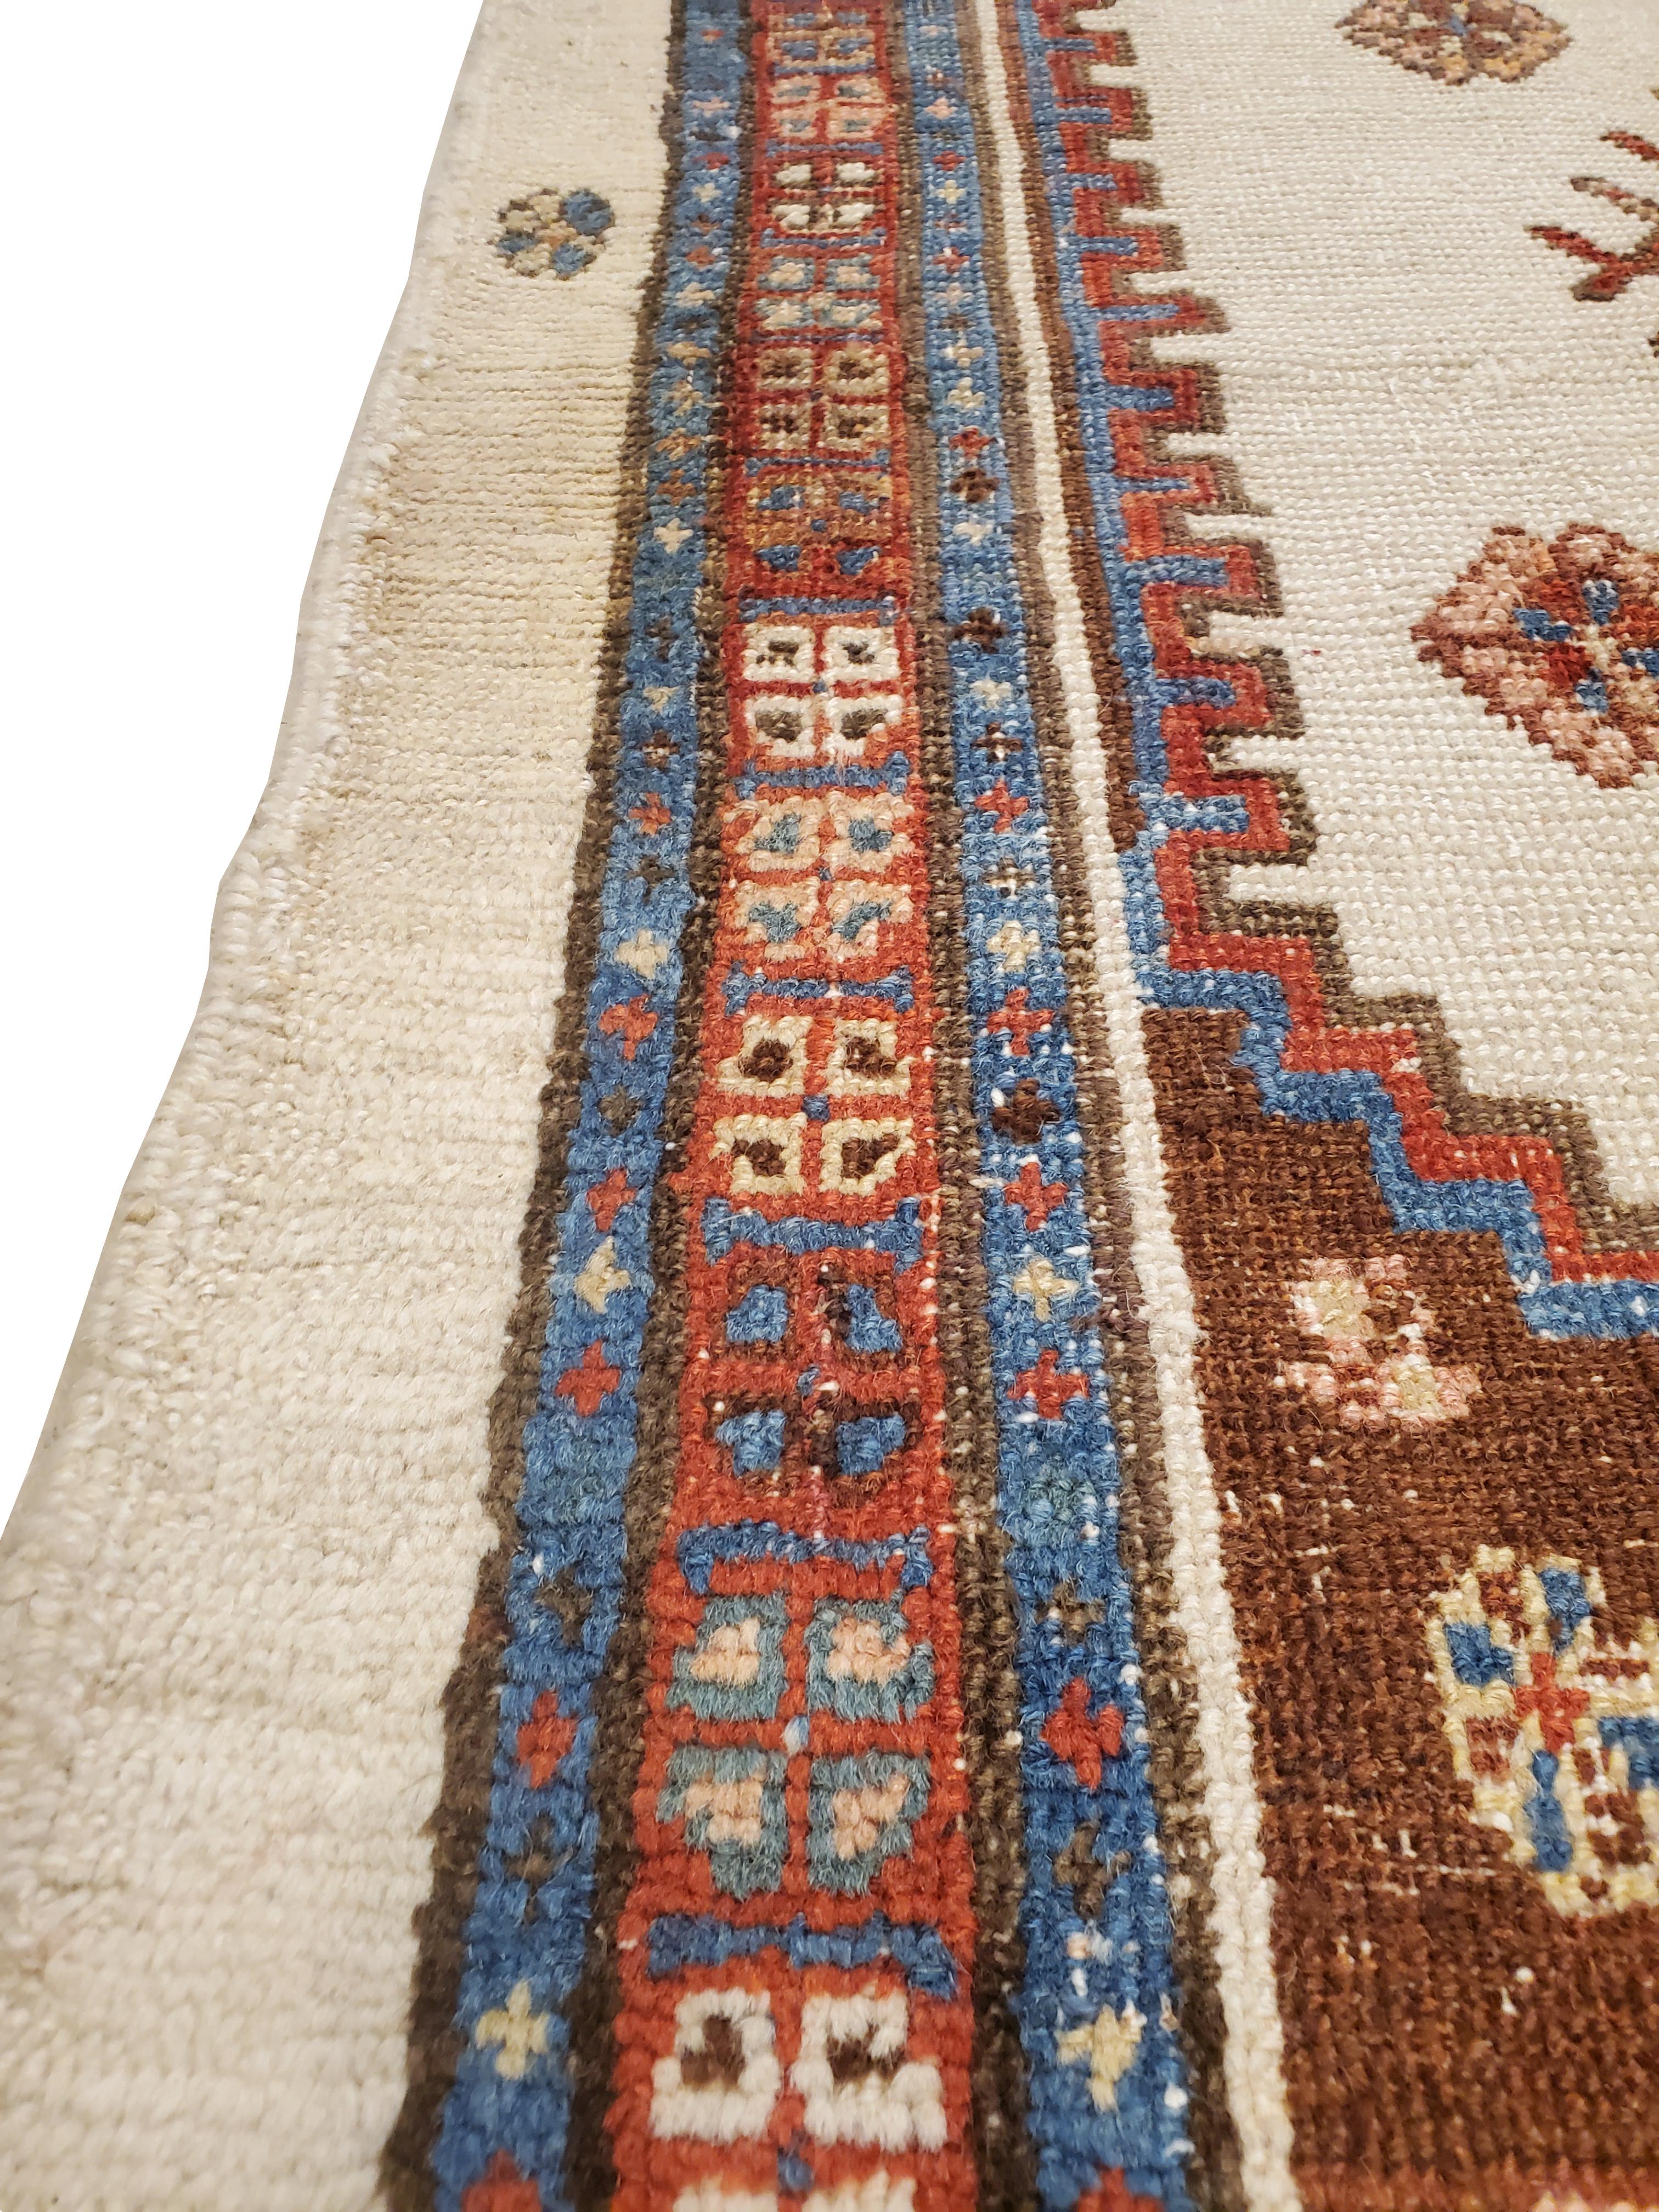 Antike Bakhshaish / Serapi-Teppiche sind vor allem in Amerika und England seit vielen Jahren einer der gefragtesten Teppiche. Antike Serapi-Teppiche sind vor allem in den amerikanischen Großstädten eine große Attraktion. Serapi-Teppiche wurden in